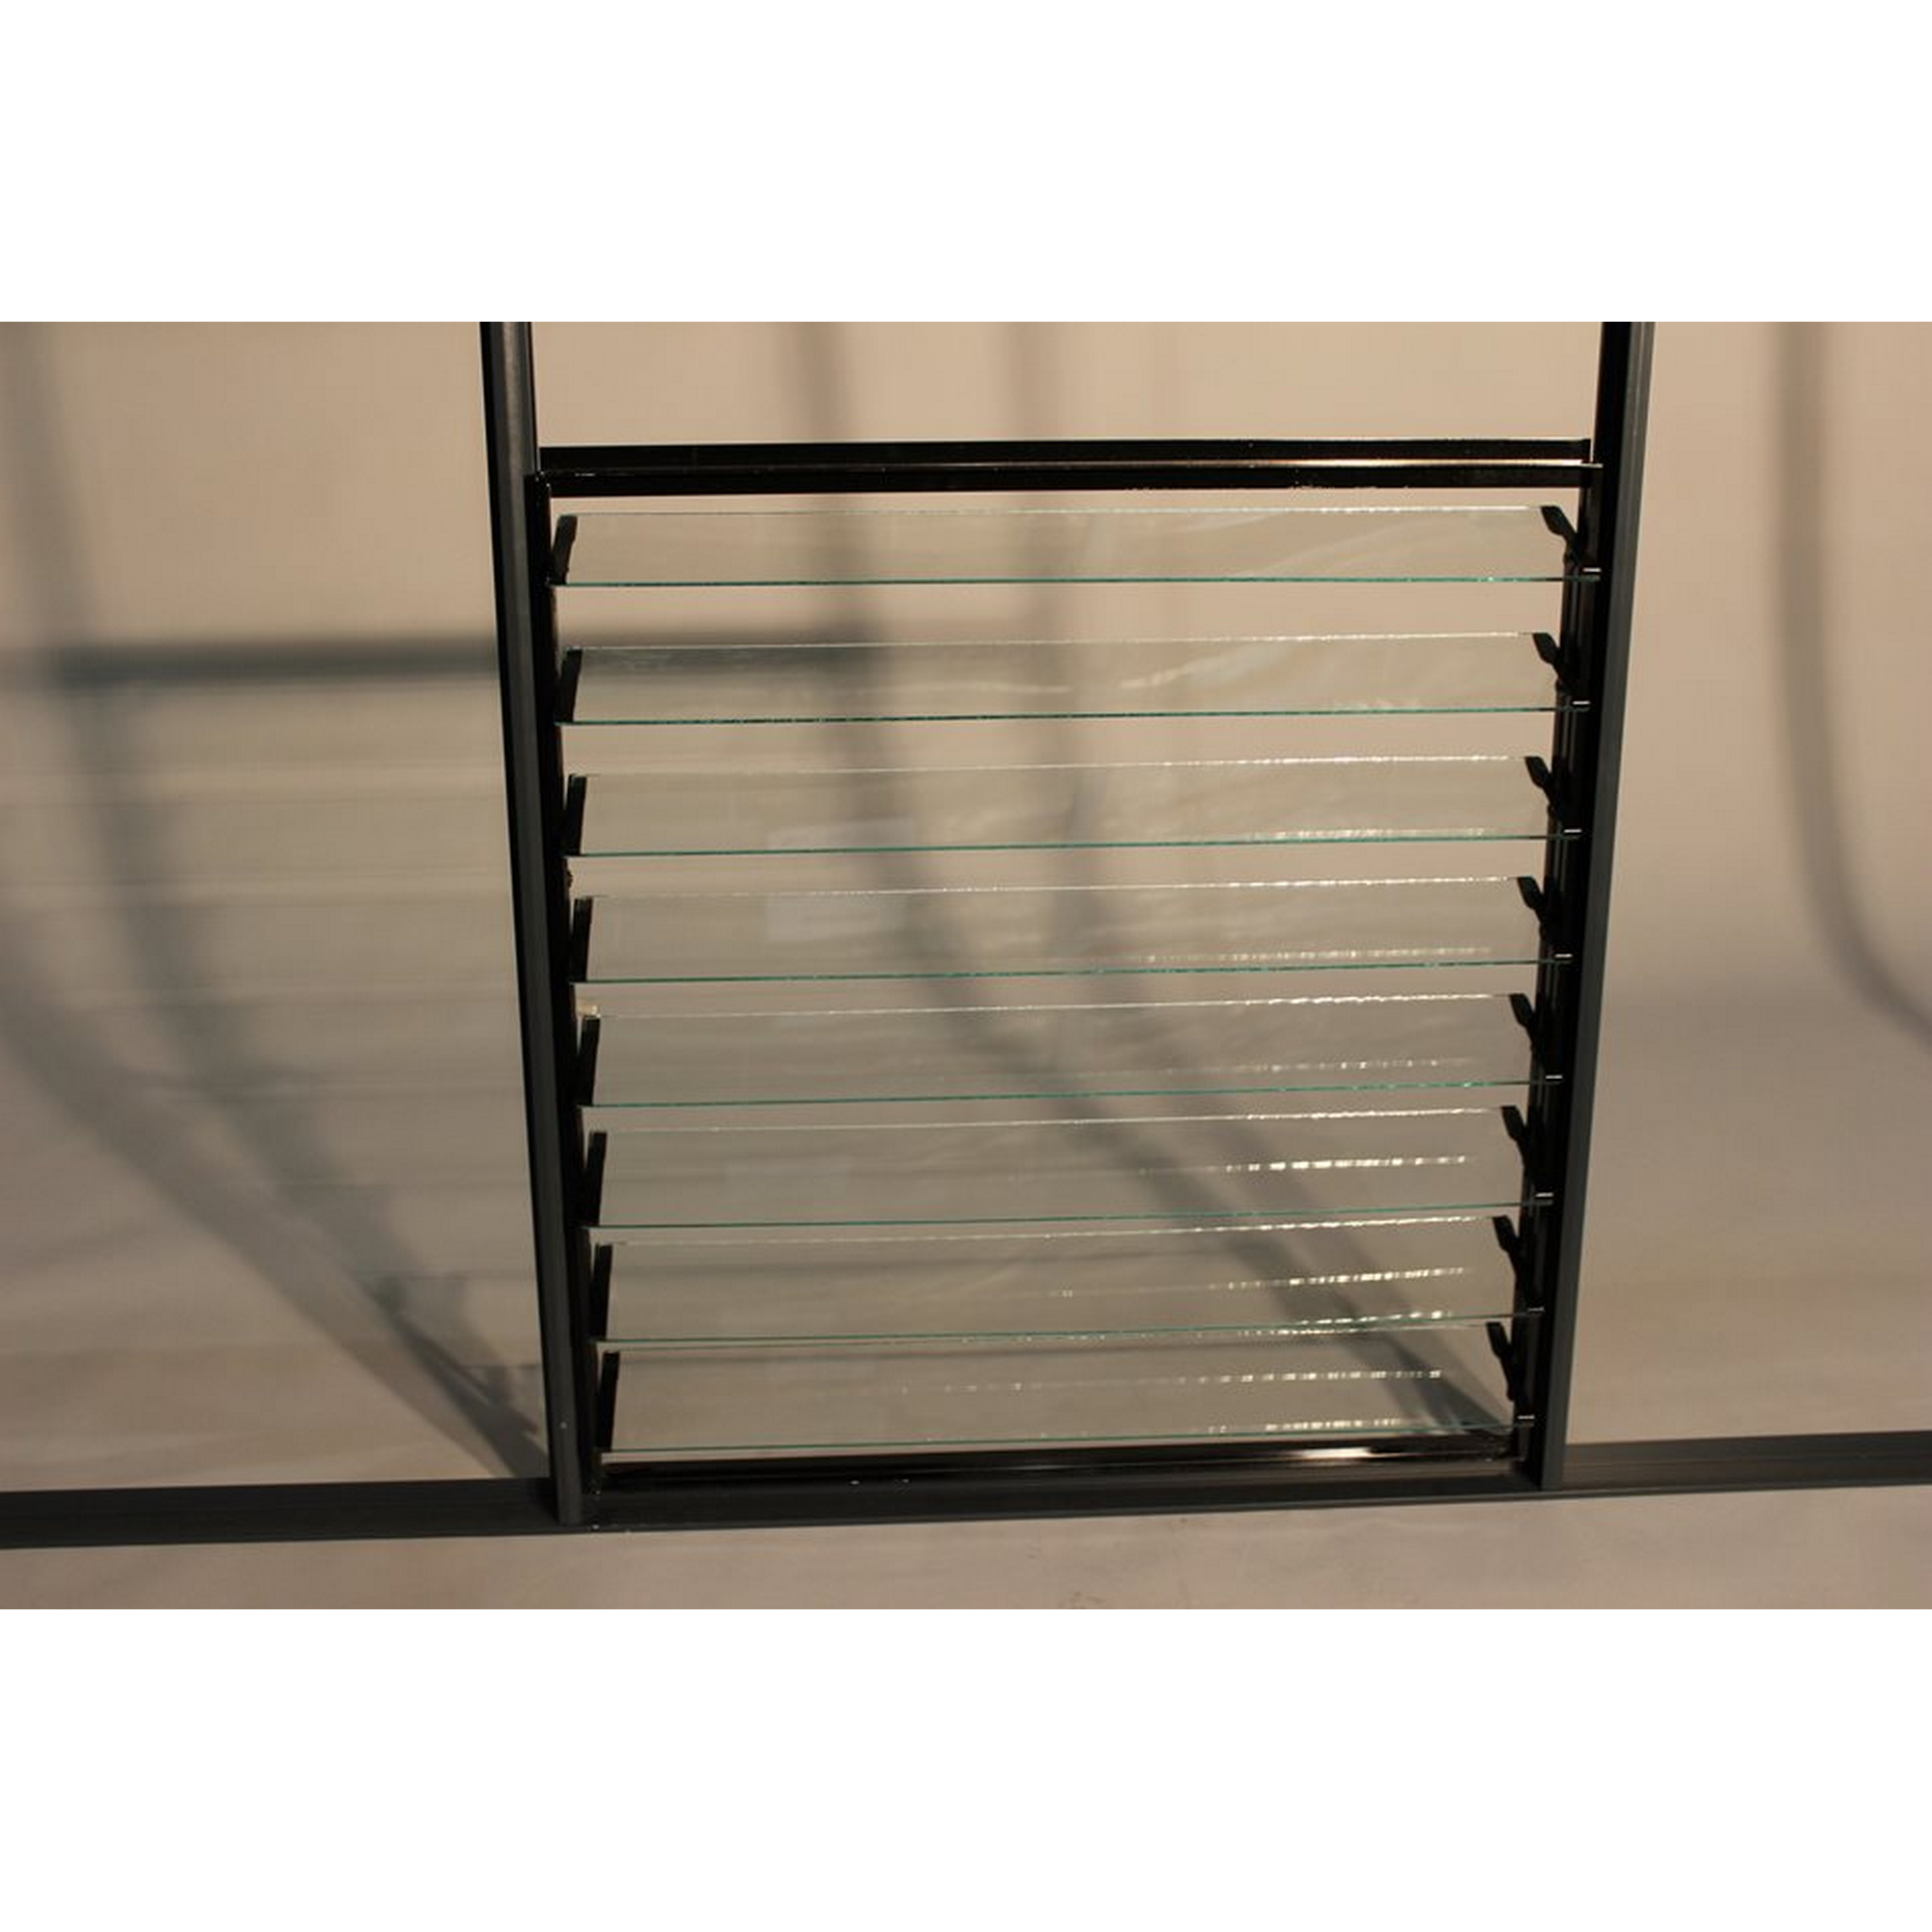 Lamellenfenster für Gewächshaus 'Qube' schwarz 61 x 57 cm + product picture